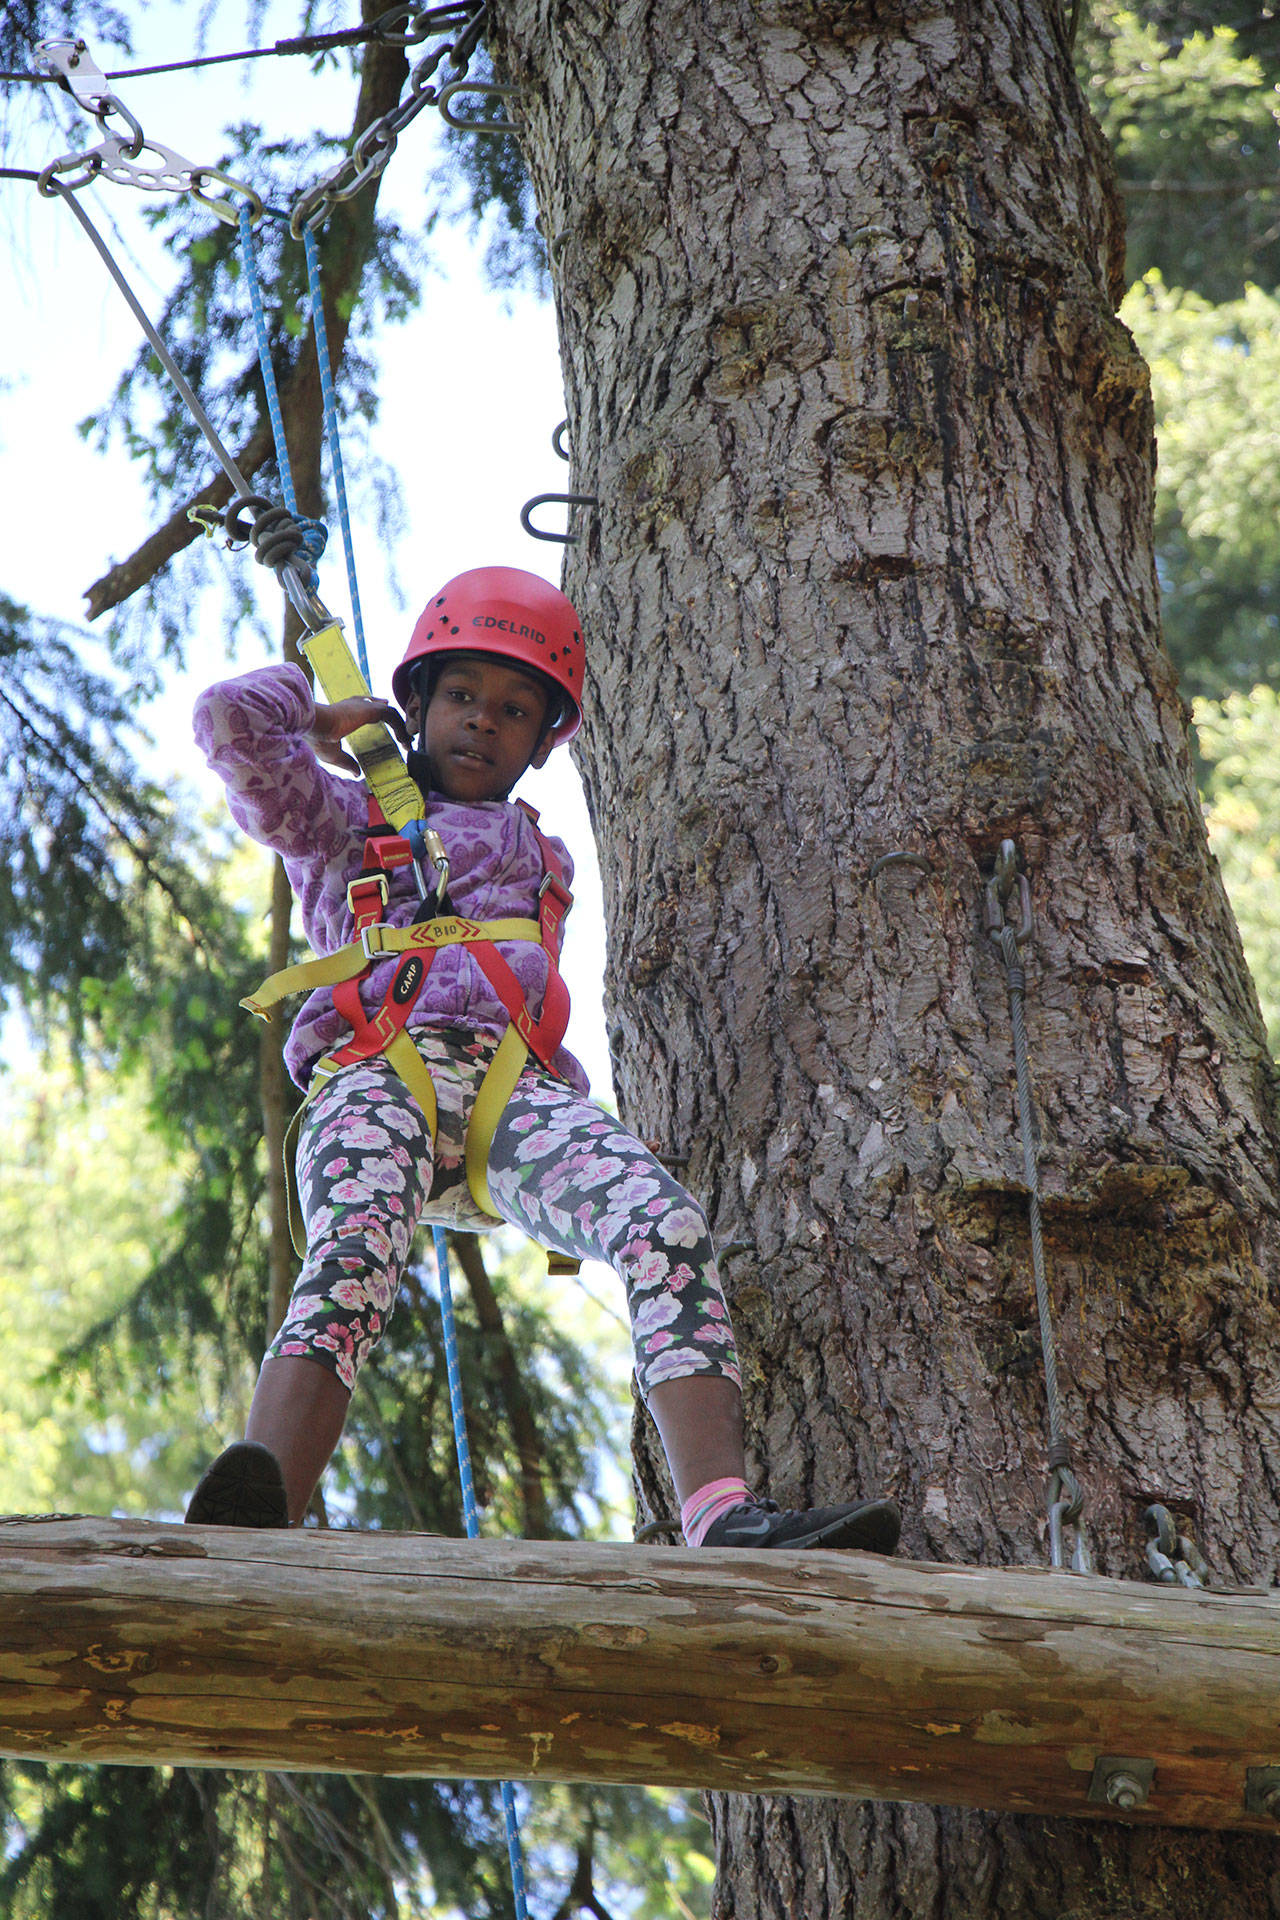 Camp Orkila: bringing joy to the lives of kids